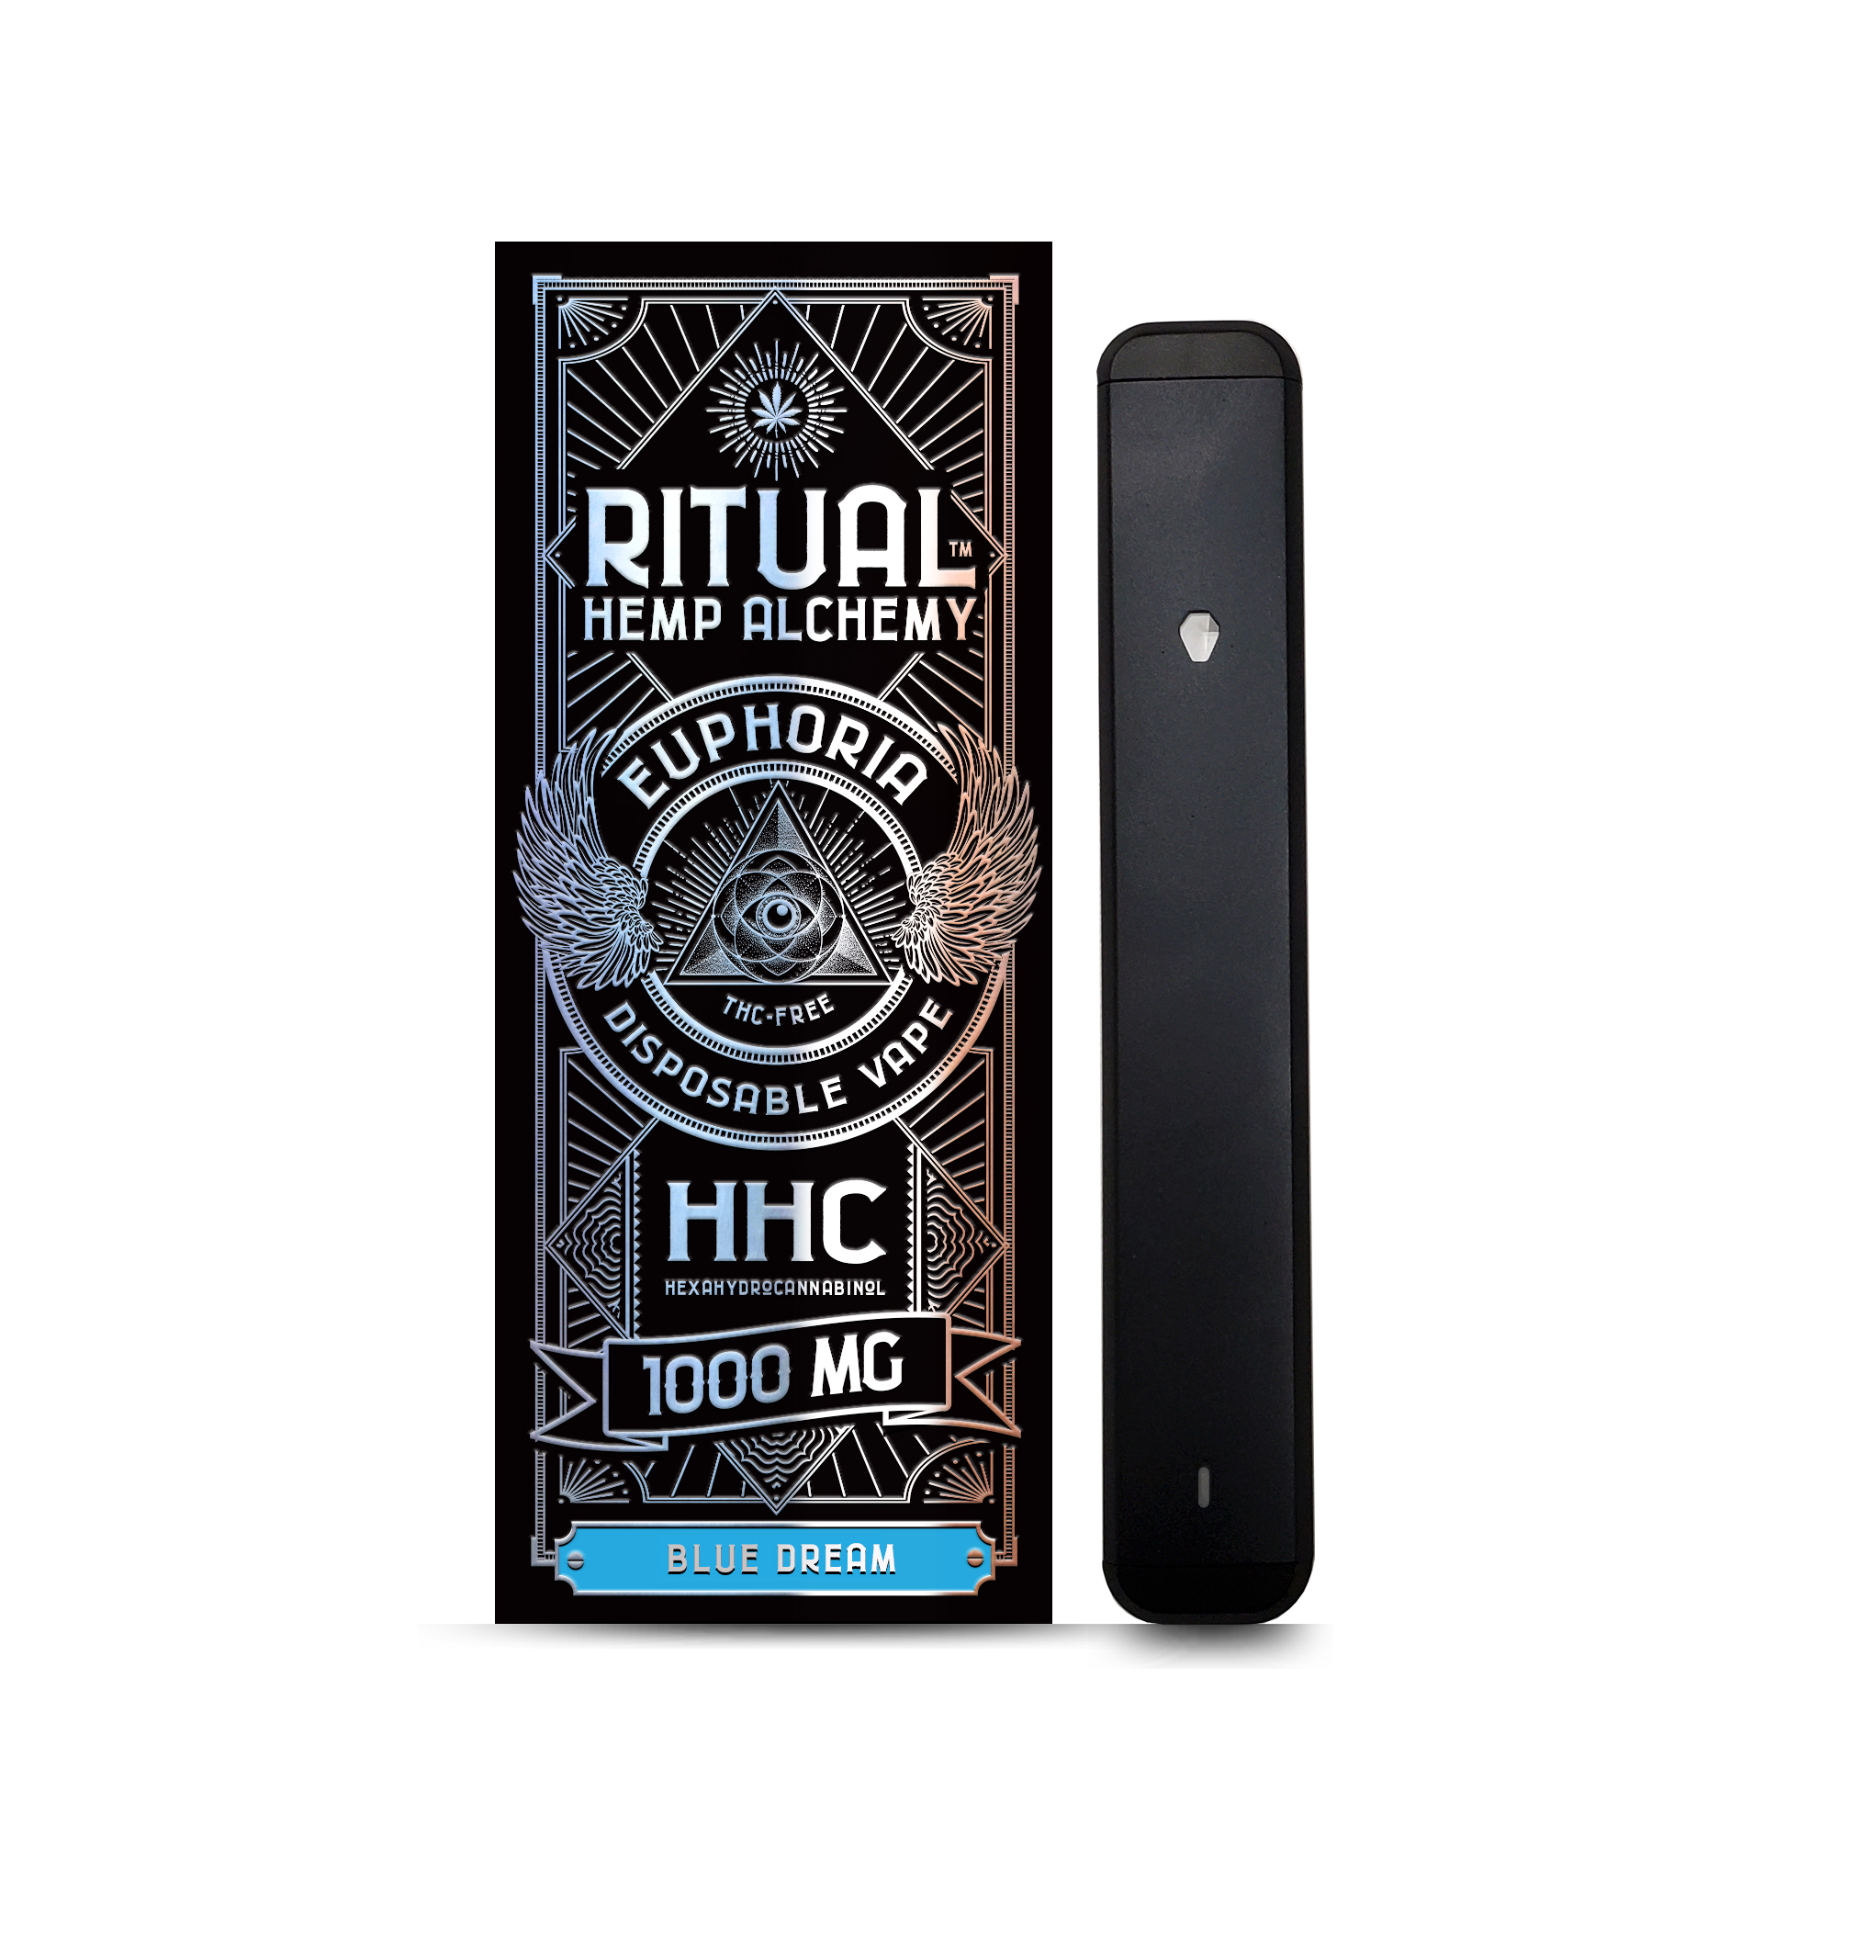 Ritual-Hemp-Alchemy-1000mg-HHC-Disposable-Vape-Pen-Blue-Dream